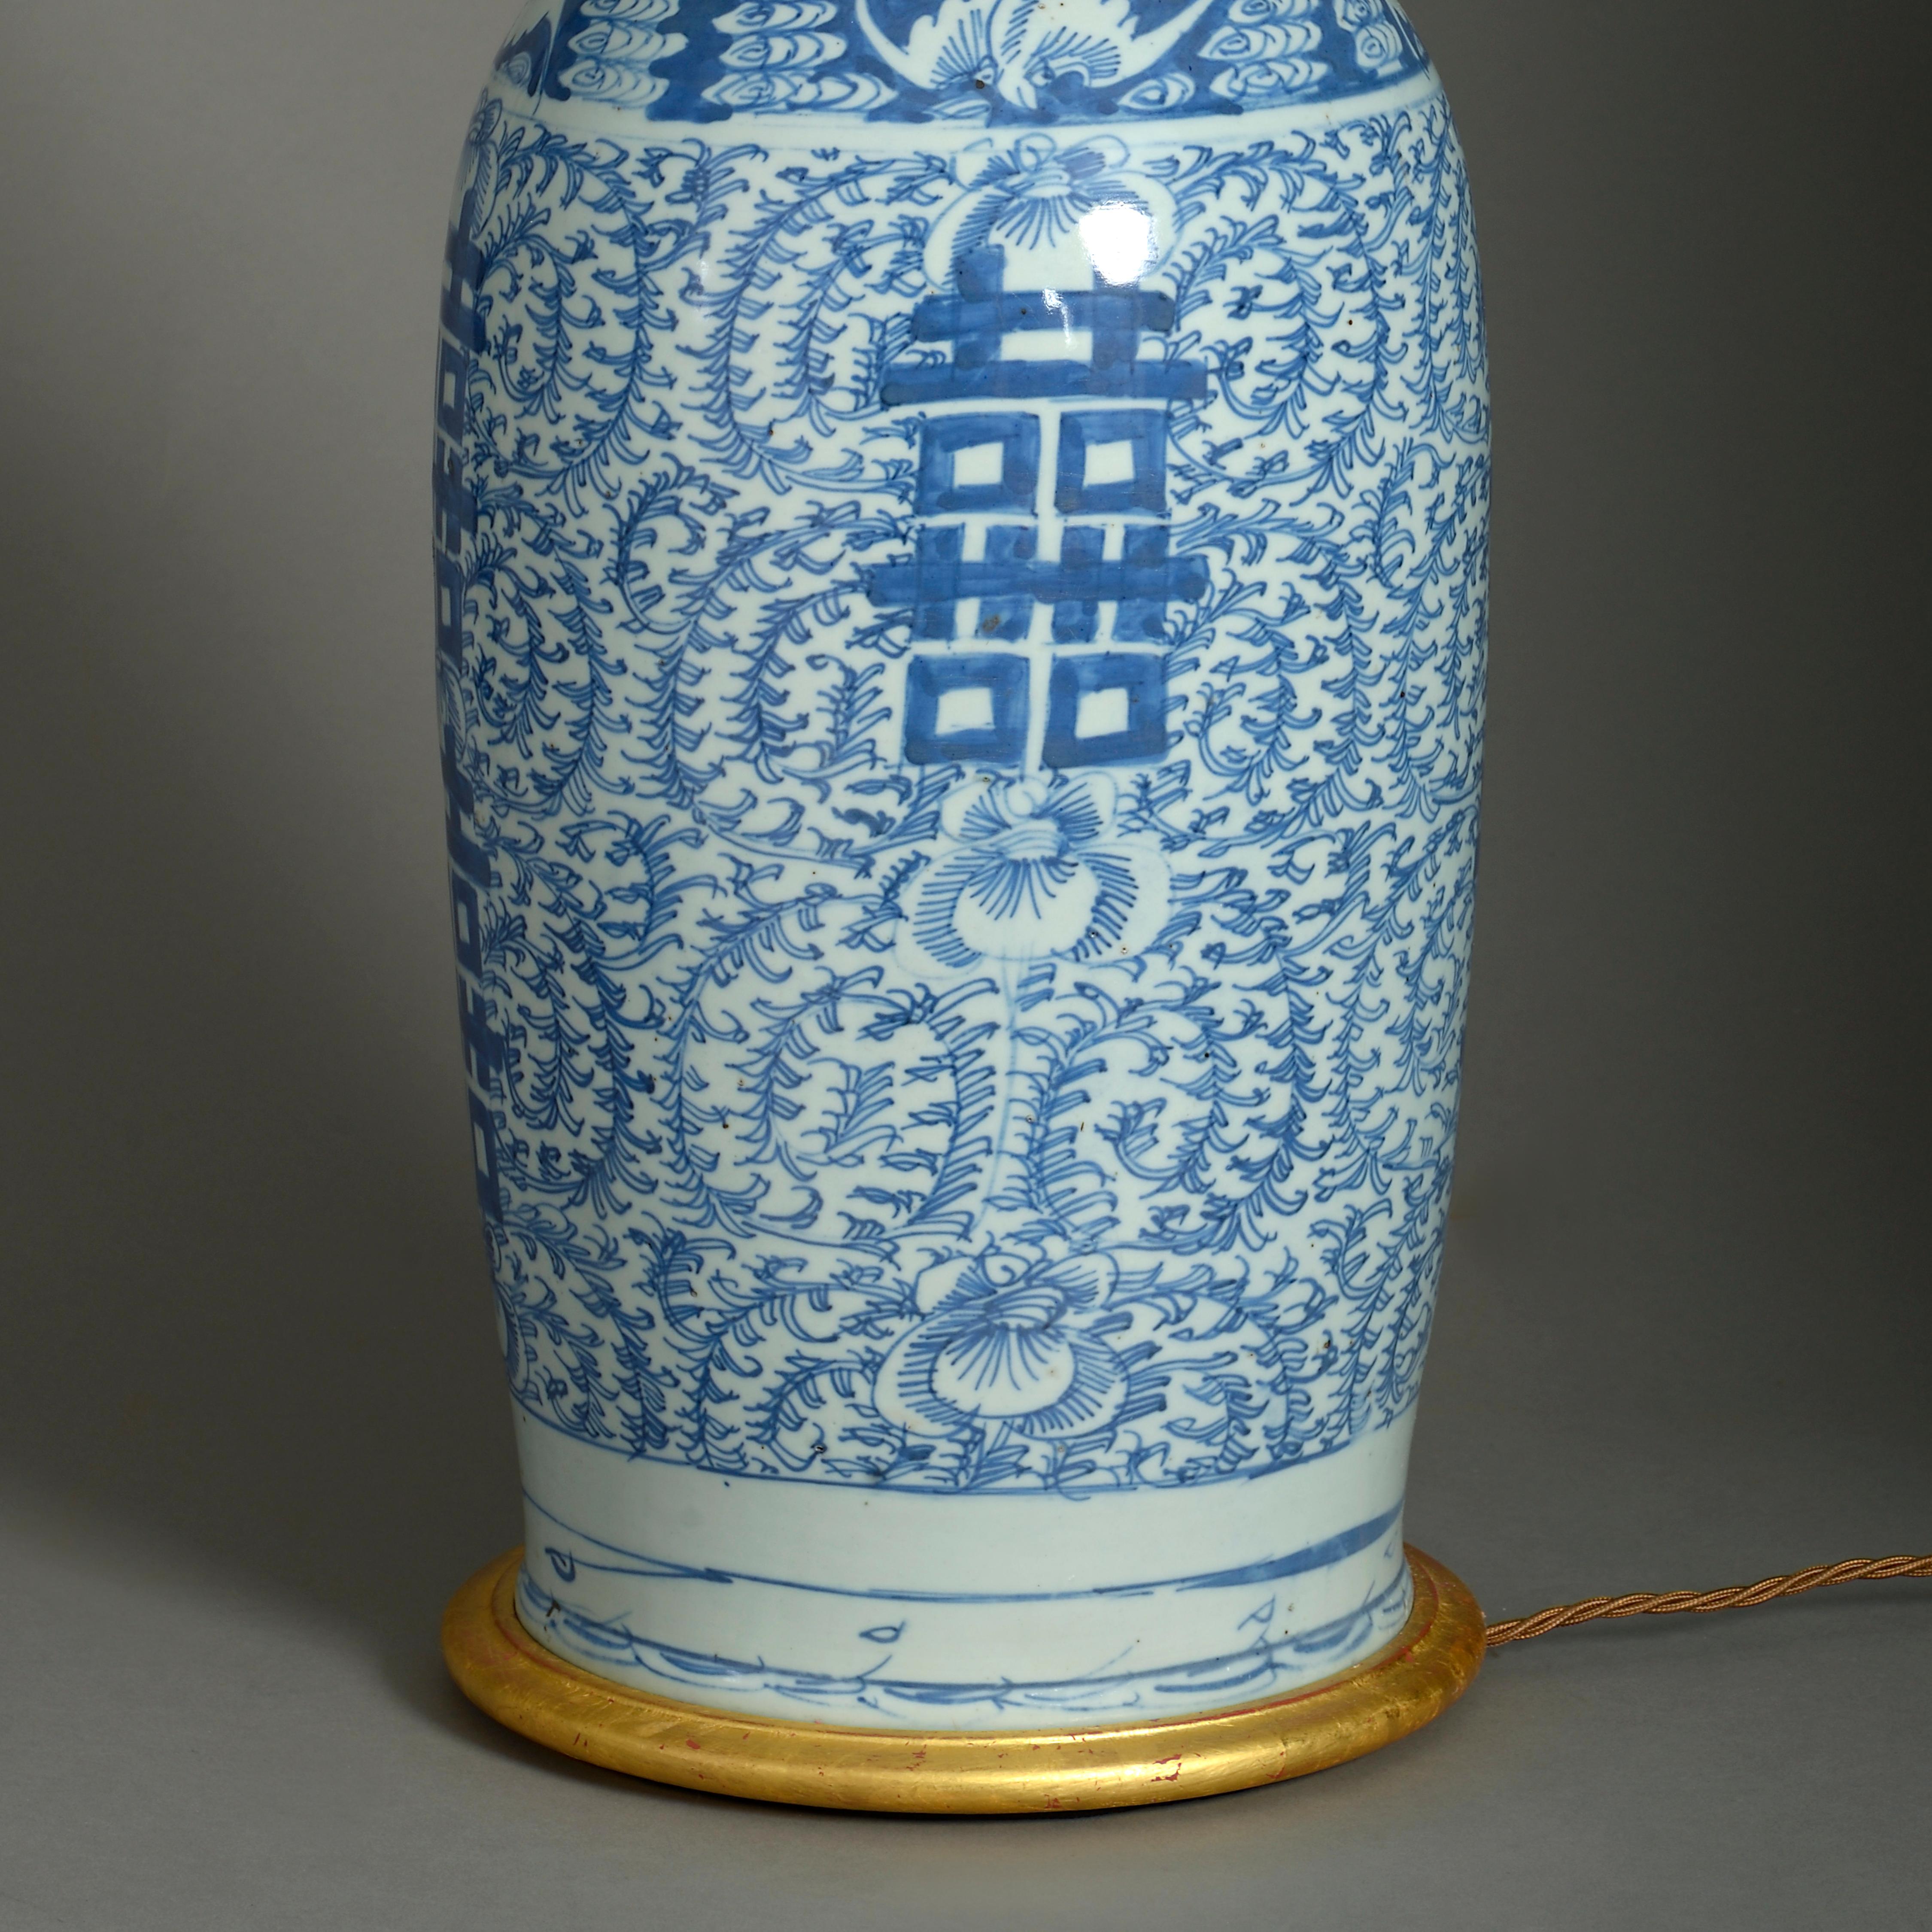 Große Vasenlampe aus blauem und weißem Porzellan aus dem 19. Jahrhundert (Gebrannt)